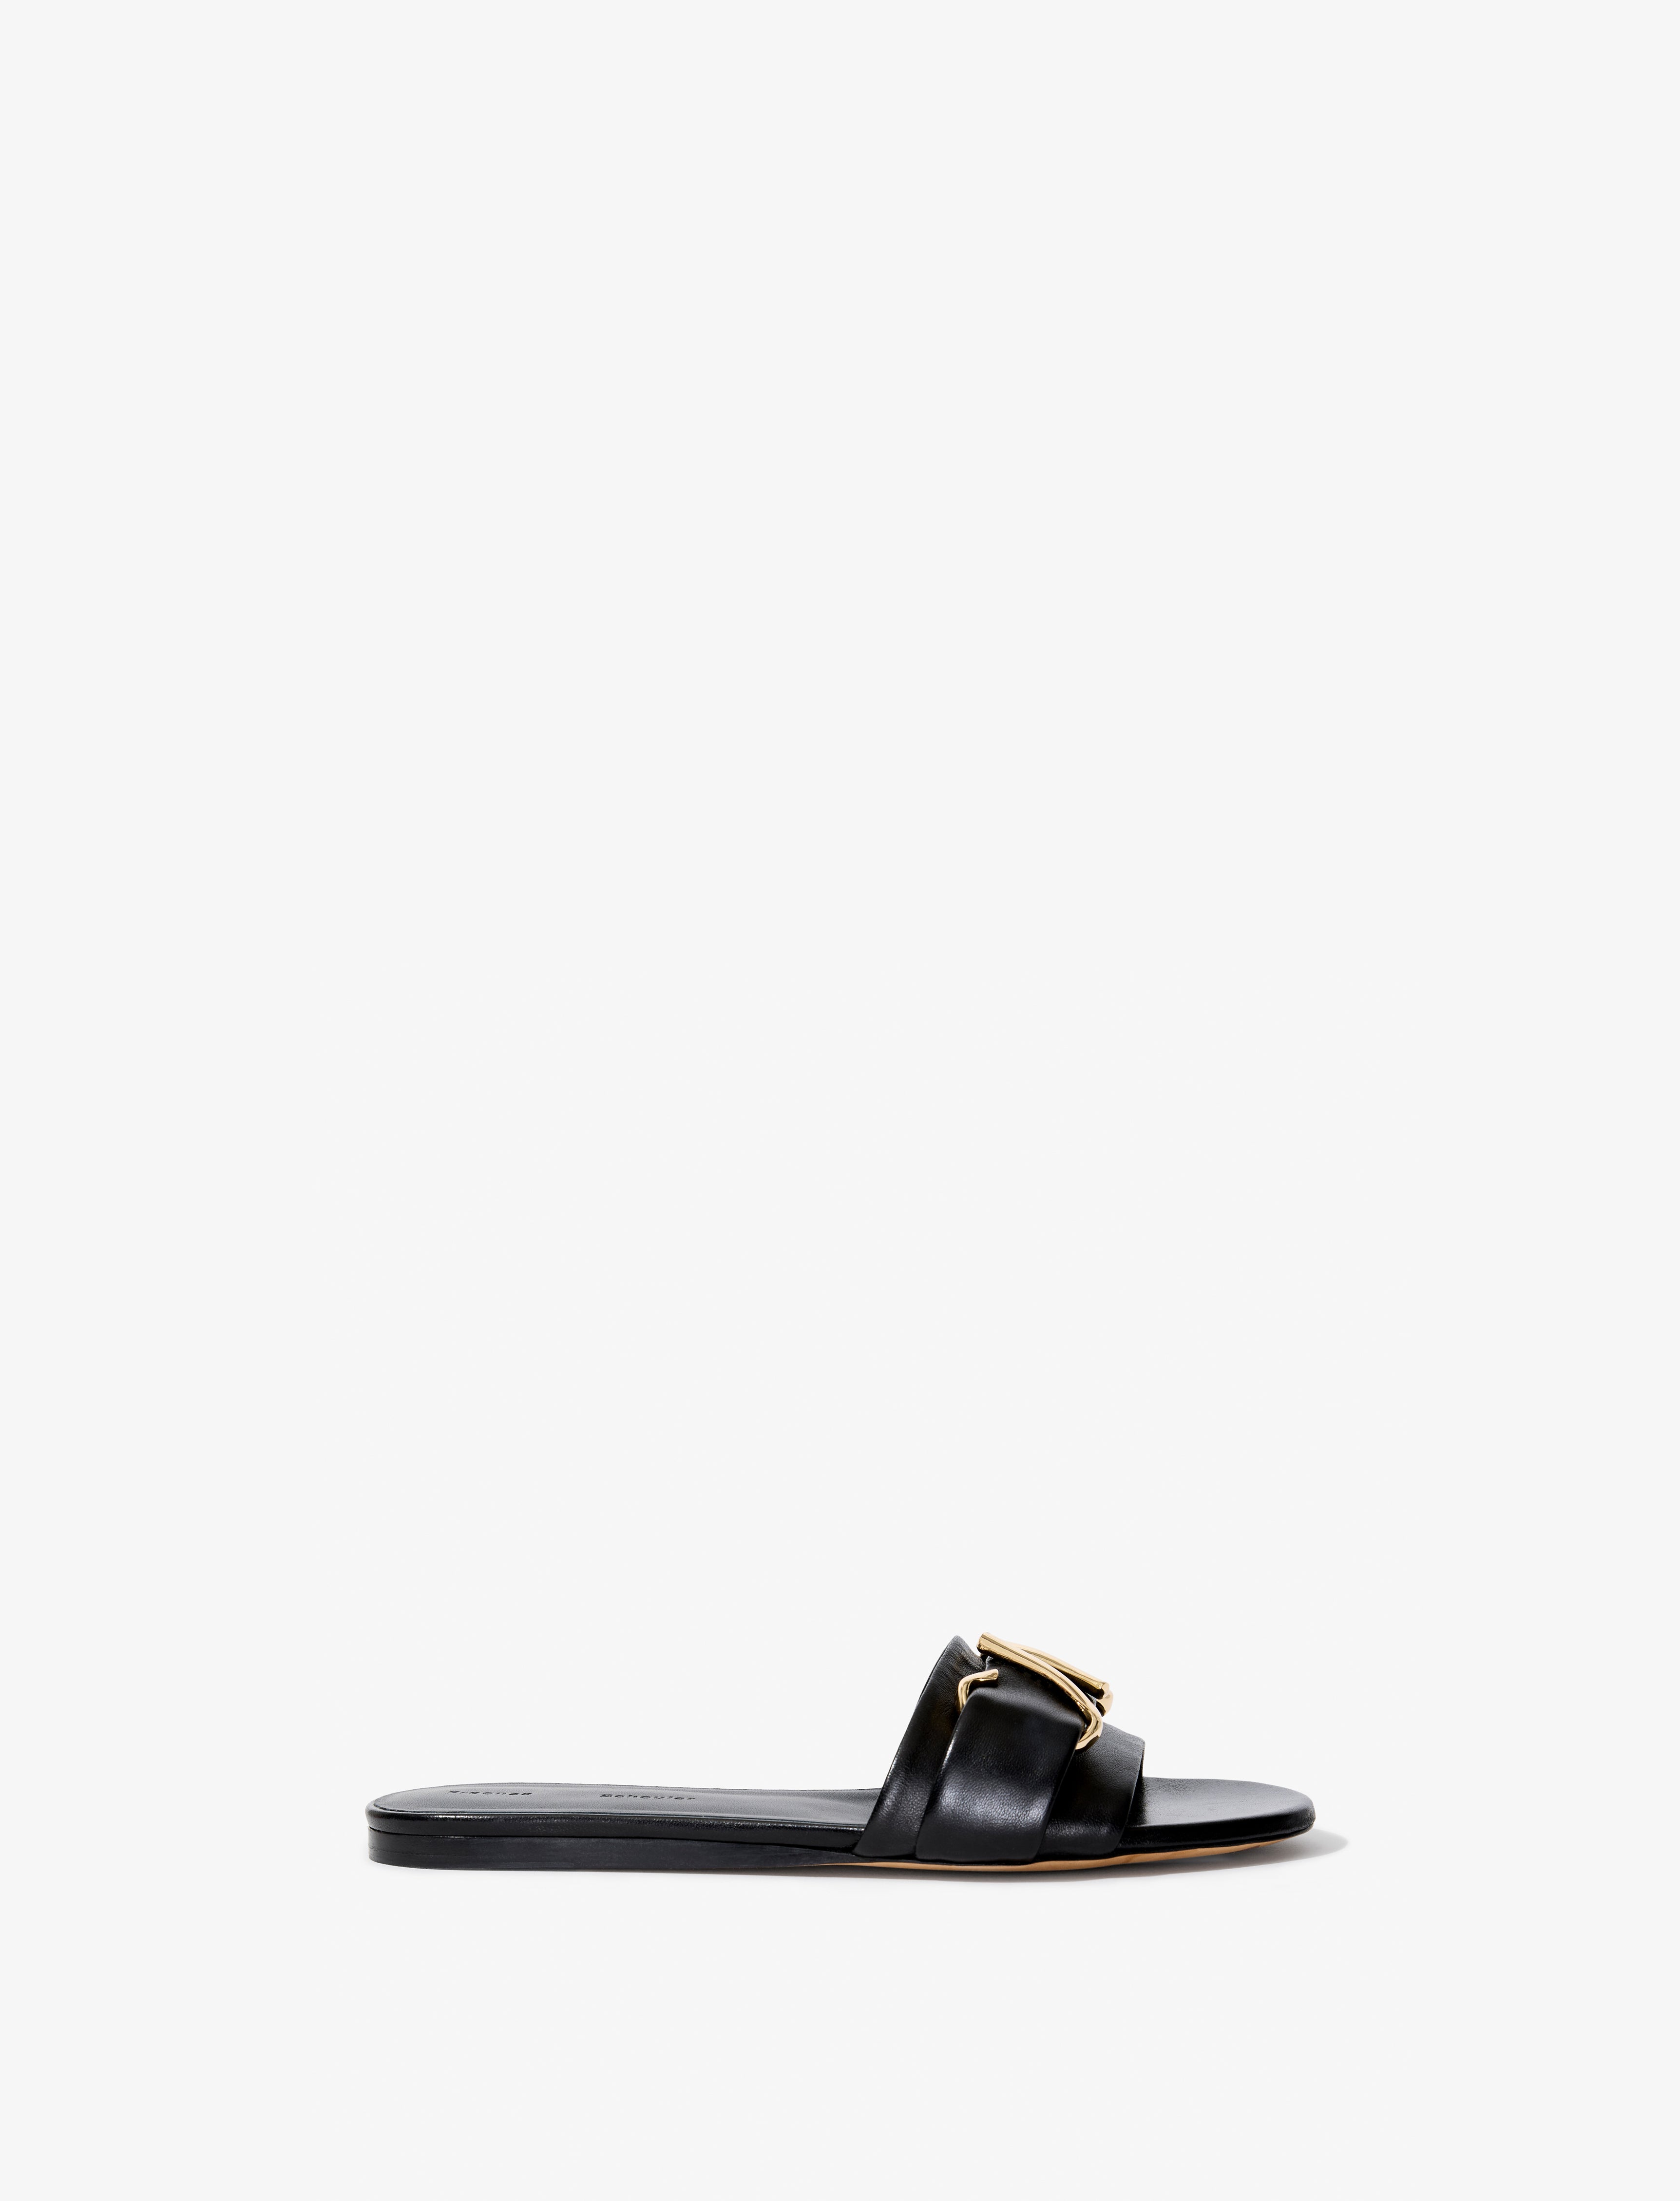 Monogram Slide Sandals – Proenza Schouler